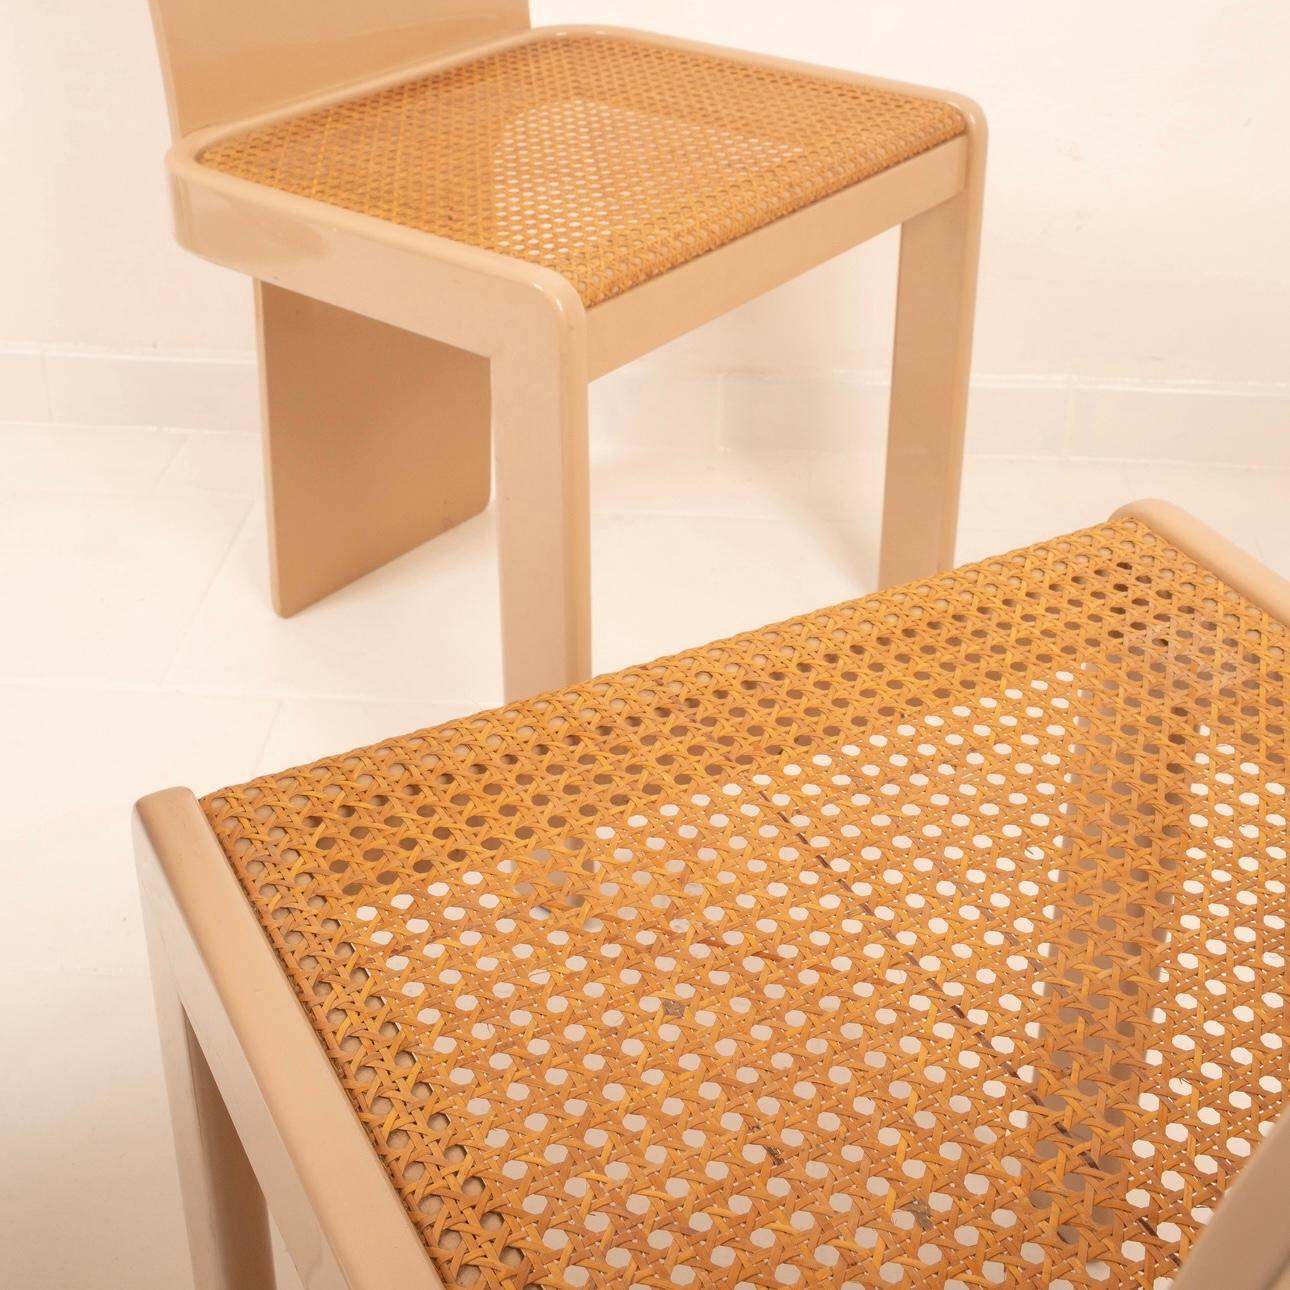 Ensemble exclusif de 4 chaises vintage, un chef-d'œuvre du design italien des années 1970.
Ces élégantes chaises en bois laqué taupe avec assise en paille ont été créées de main de maître par Pierluigi Molinari pour la célèbre société italienne